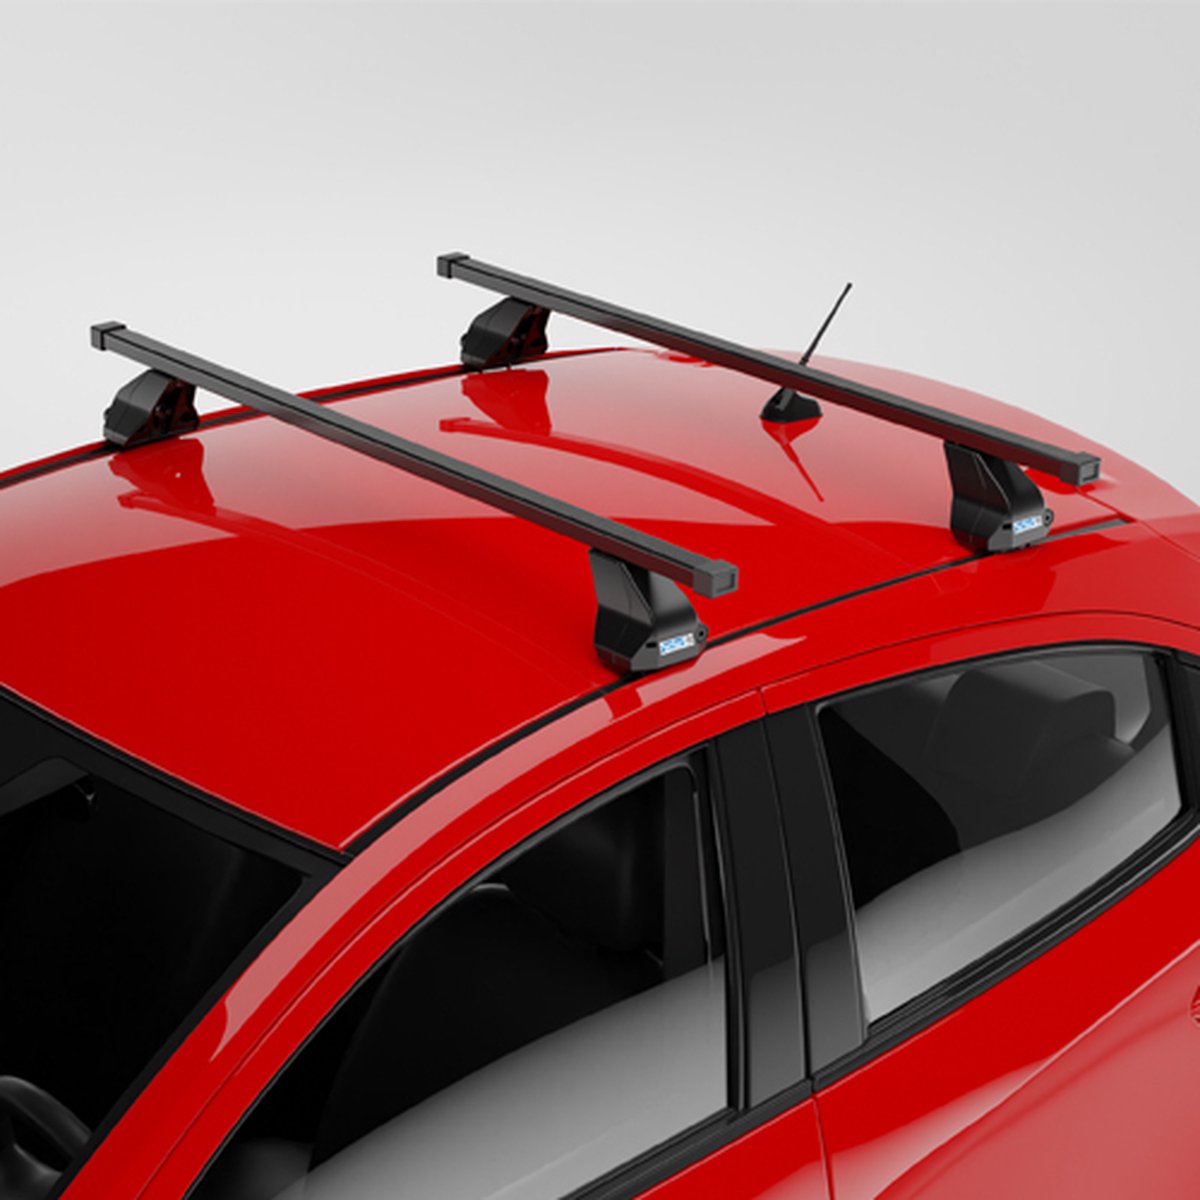 Dakdragers geschikt voor Mazda 3 5 deurs hatchback 2009 t/m 2013